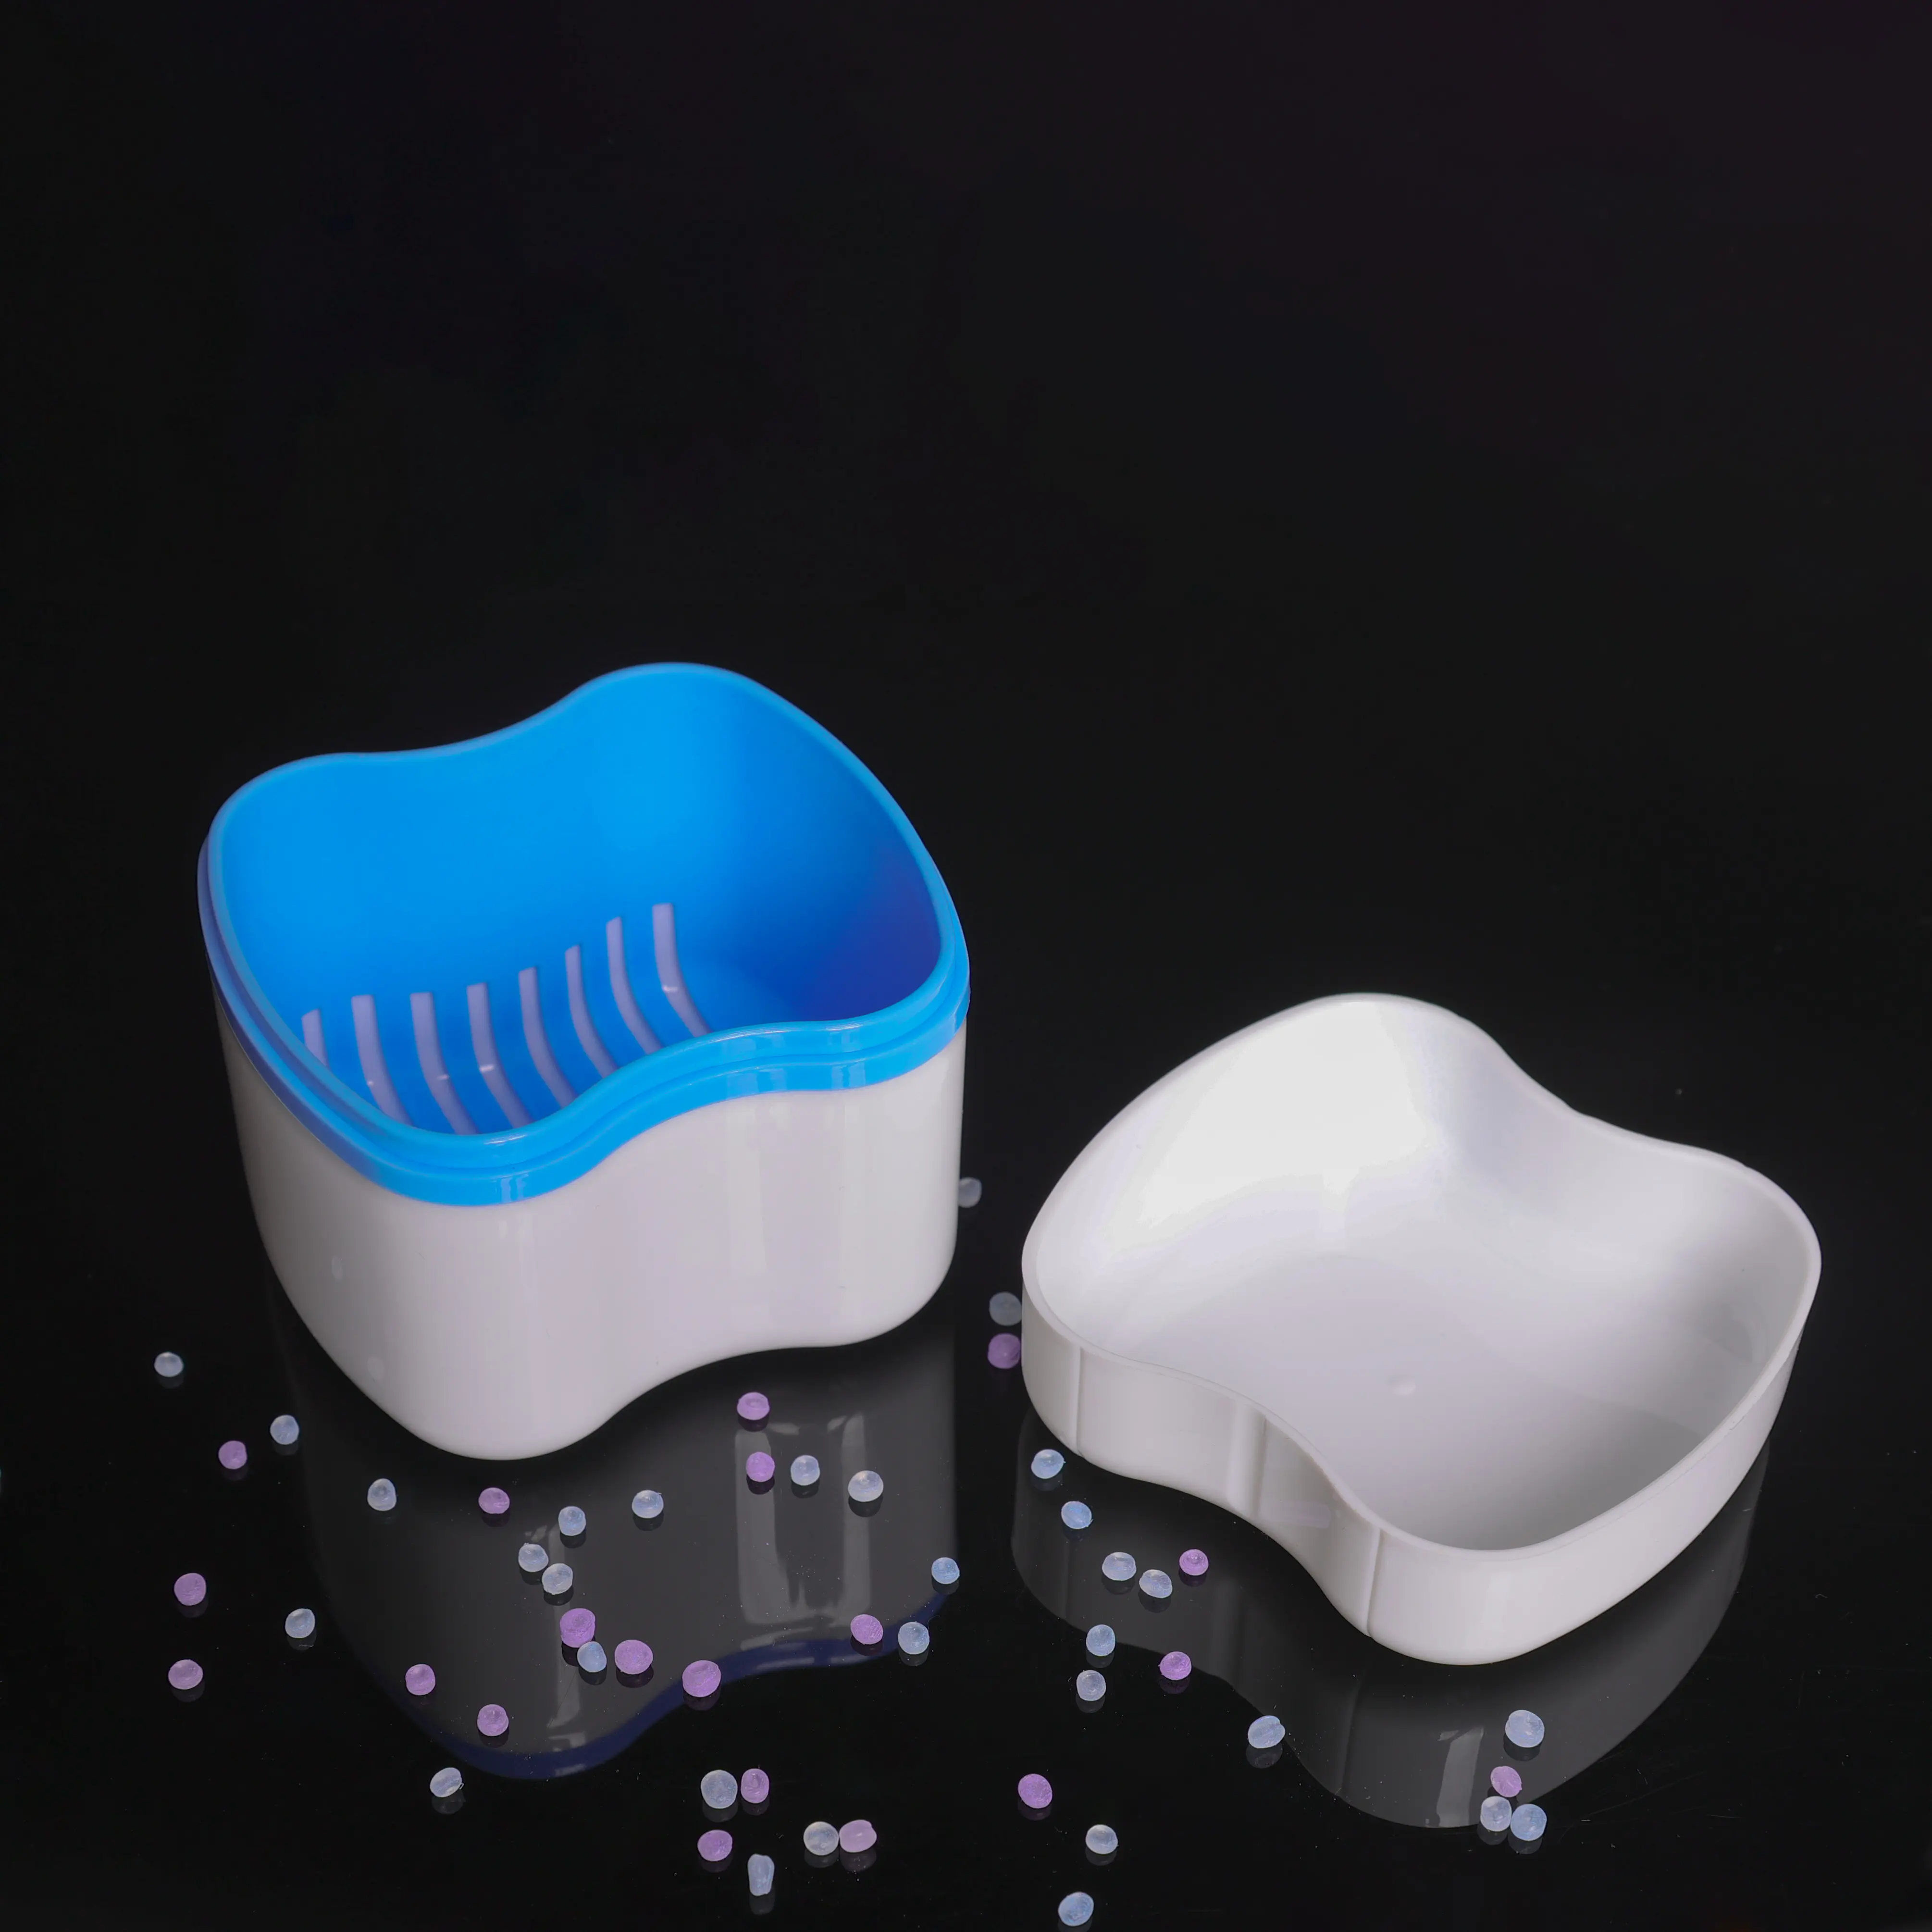 Caixa ortodôntica para dentaduras, caixa de retentor dental, caixa alinhadora com logotipo